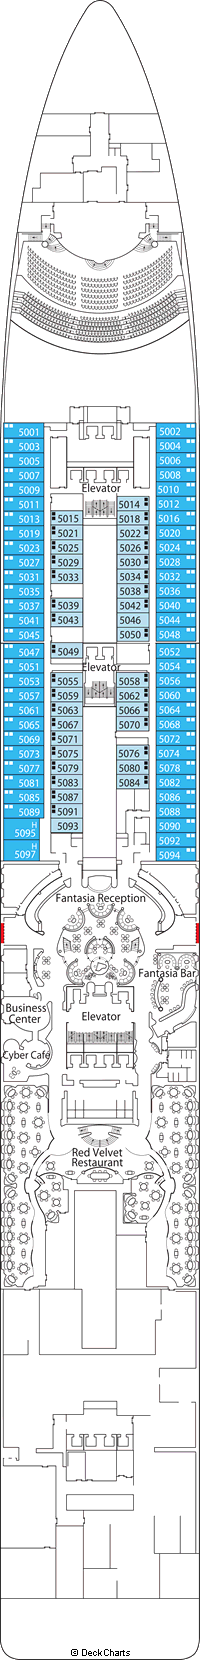 msc fantasia deck plan pdf